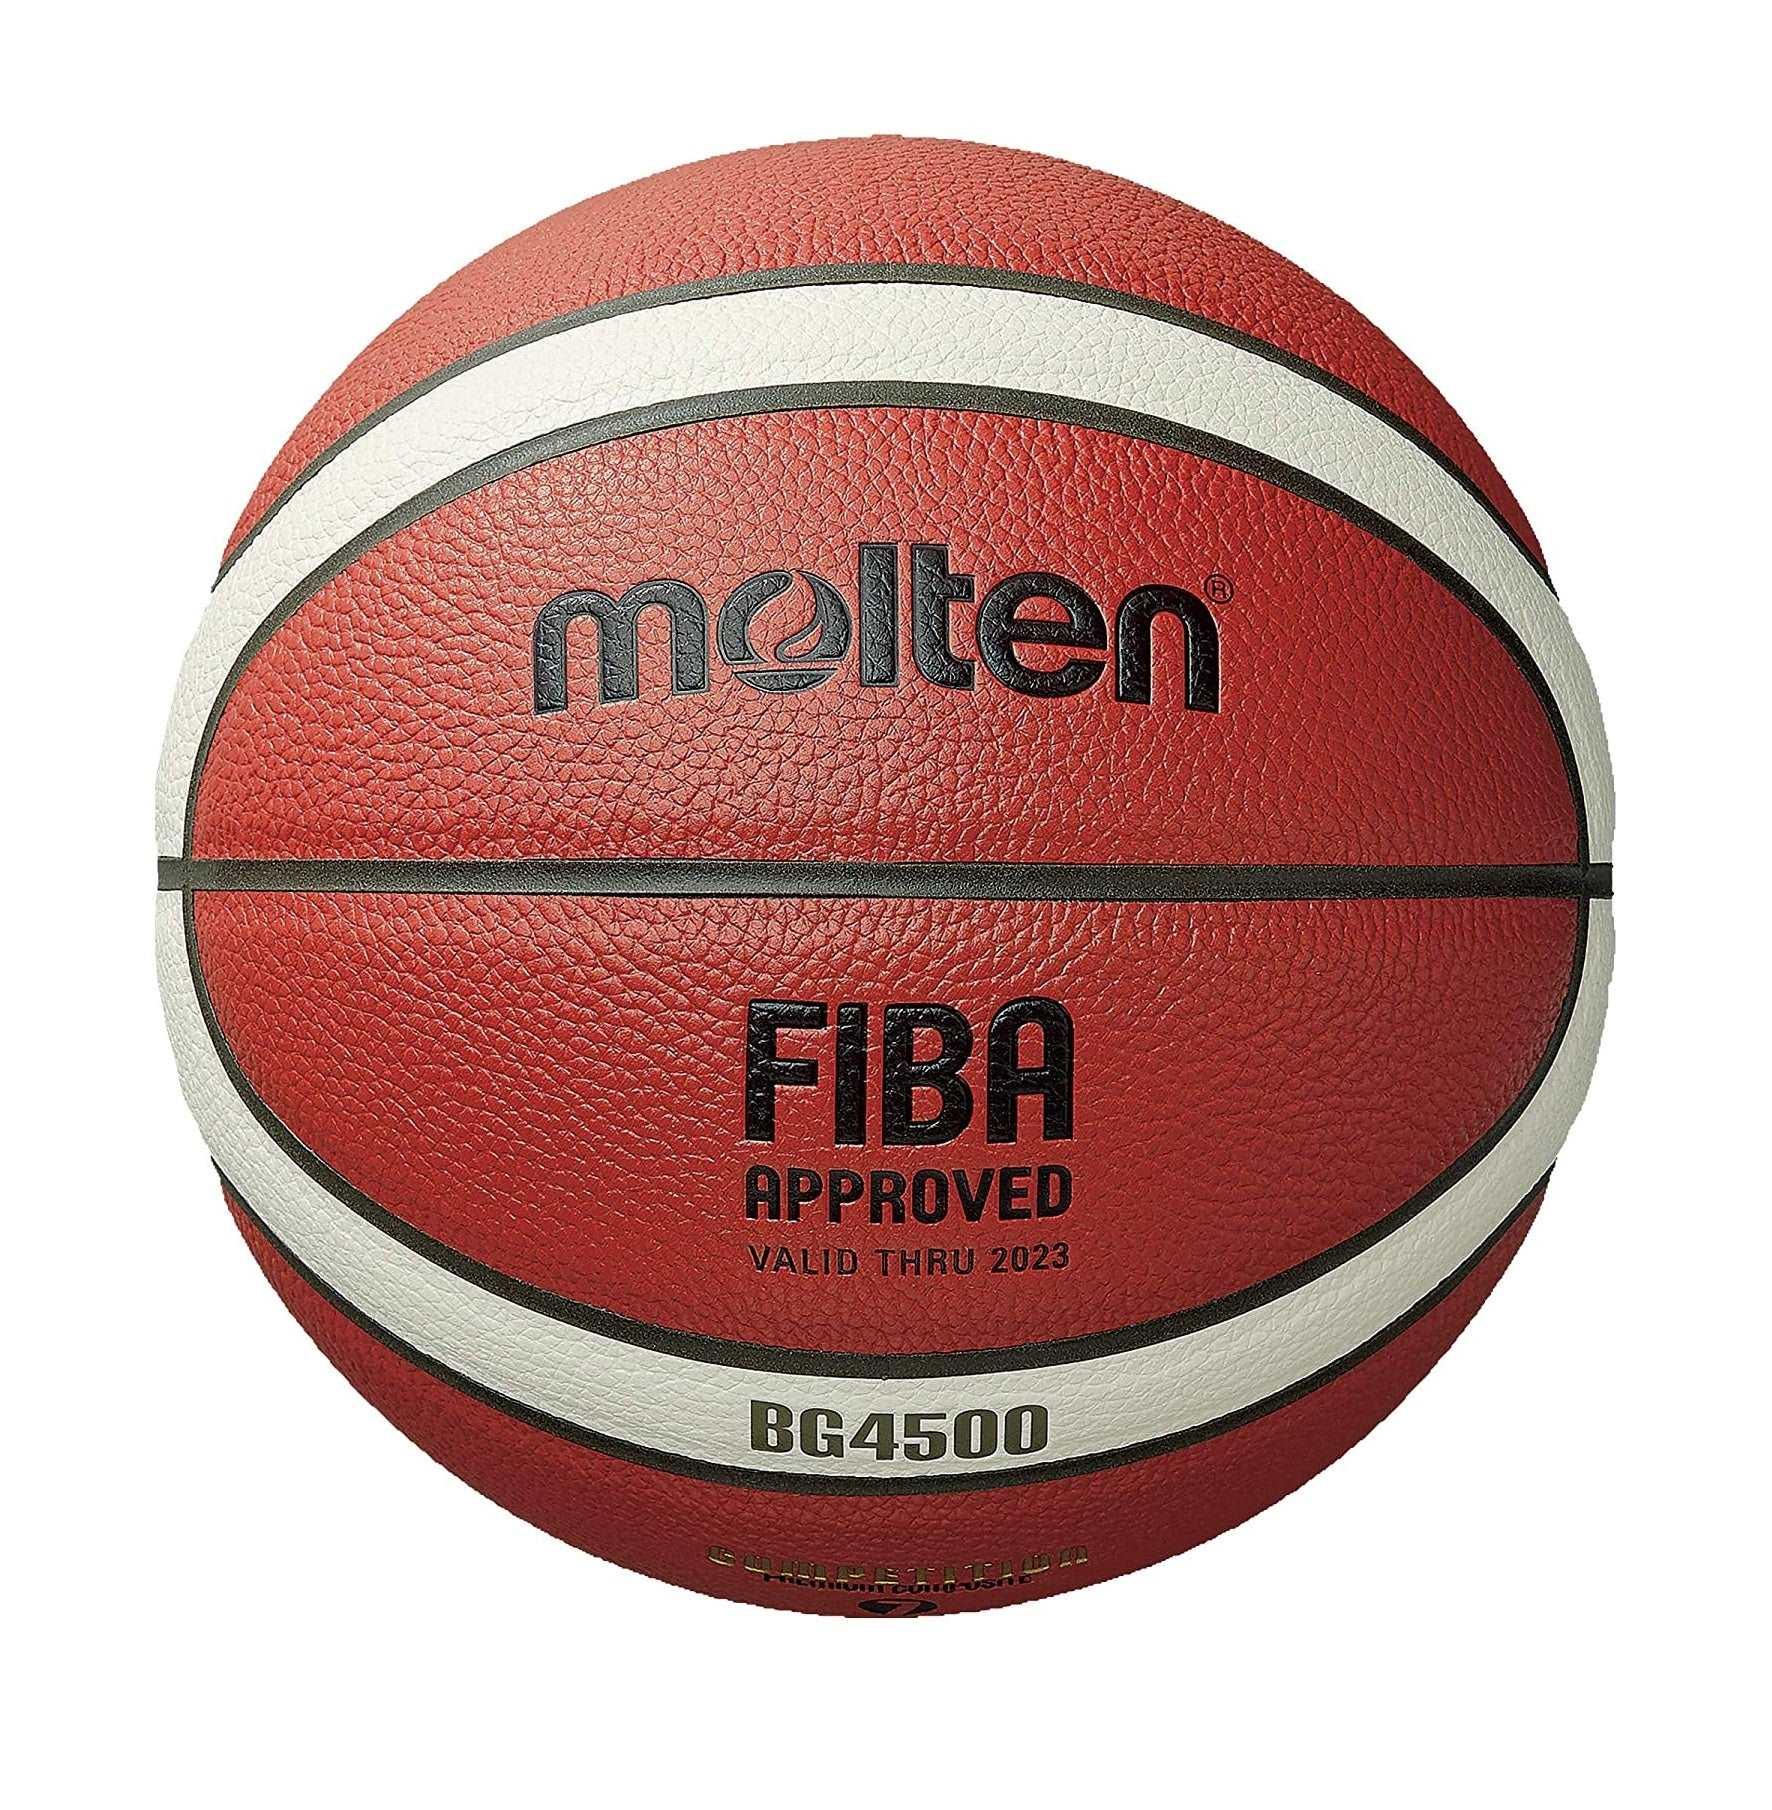 GG7X FIBA Official Size7 Molten Basketball Pump & Drawstring Bags